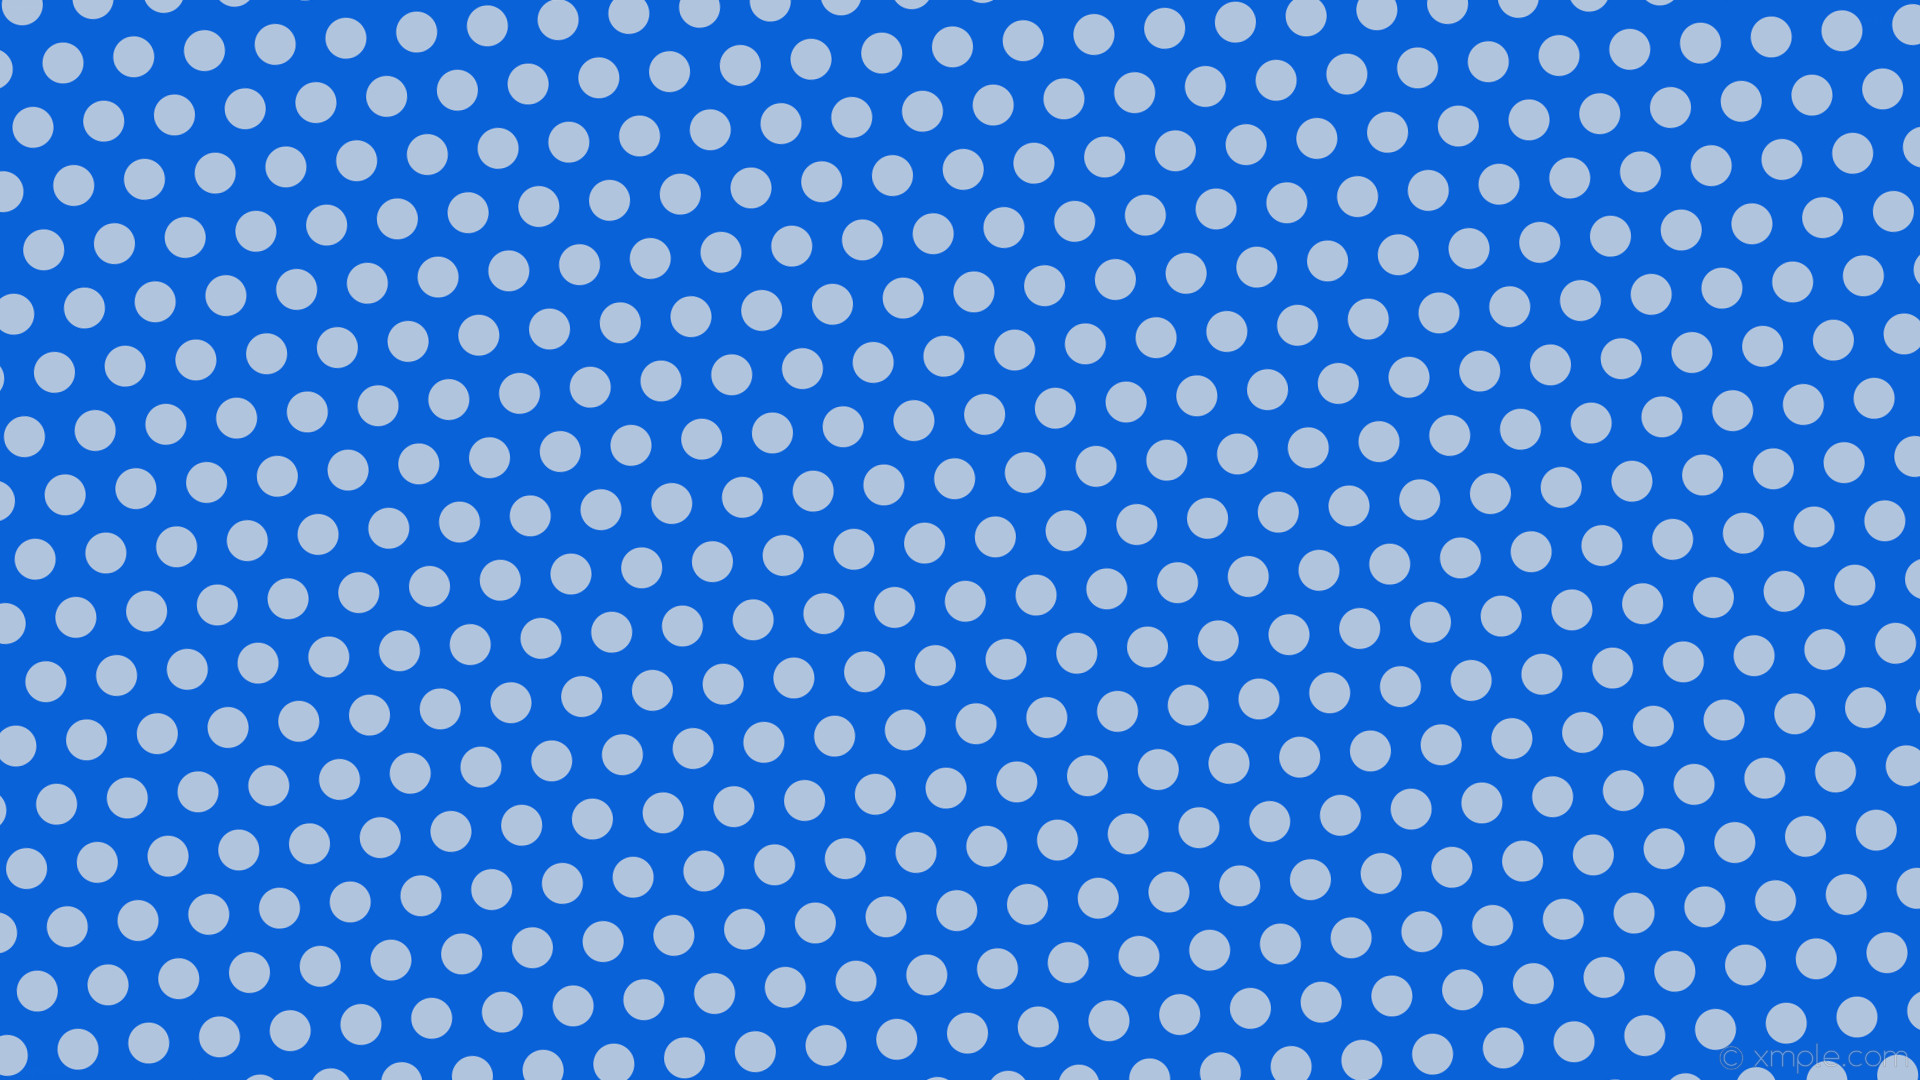 Wallpaper blue polka dots azure hexagon light steel blue a62d9 #b0c4de diagonal 5